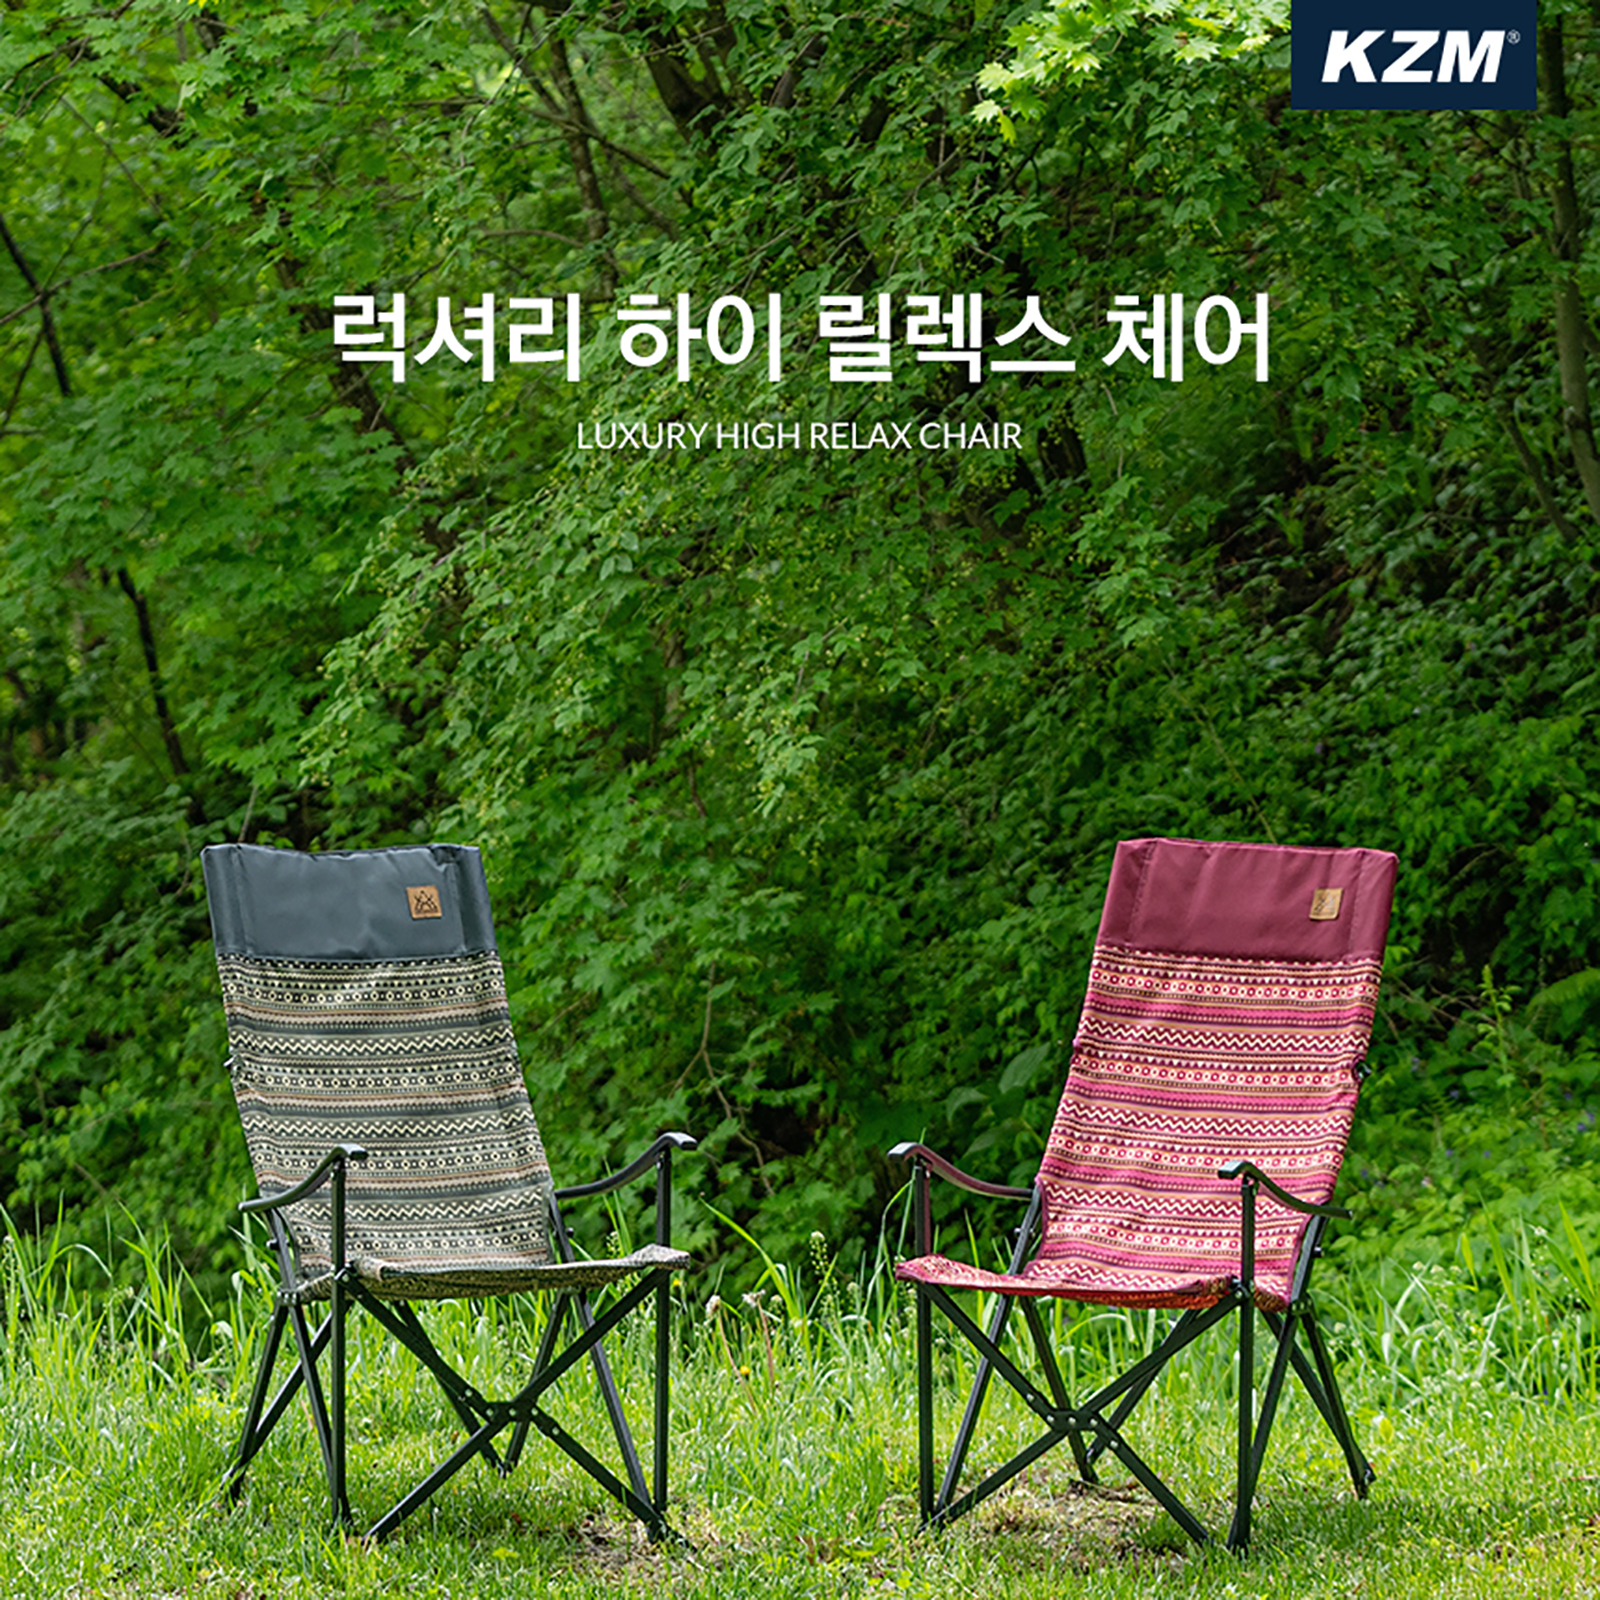 Ghế xếp dã ngoại Kazmi High Relax K3T3C003